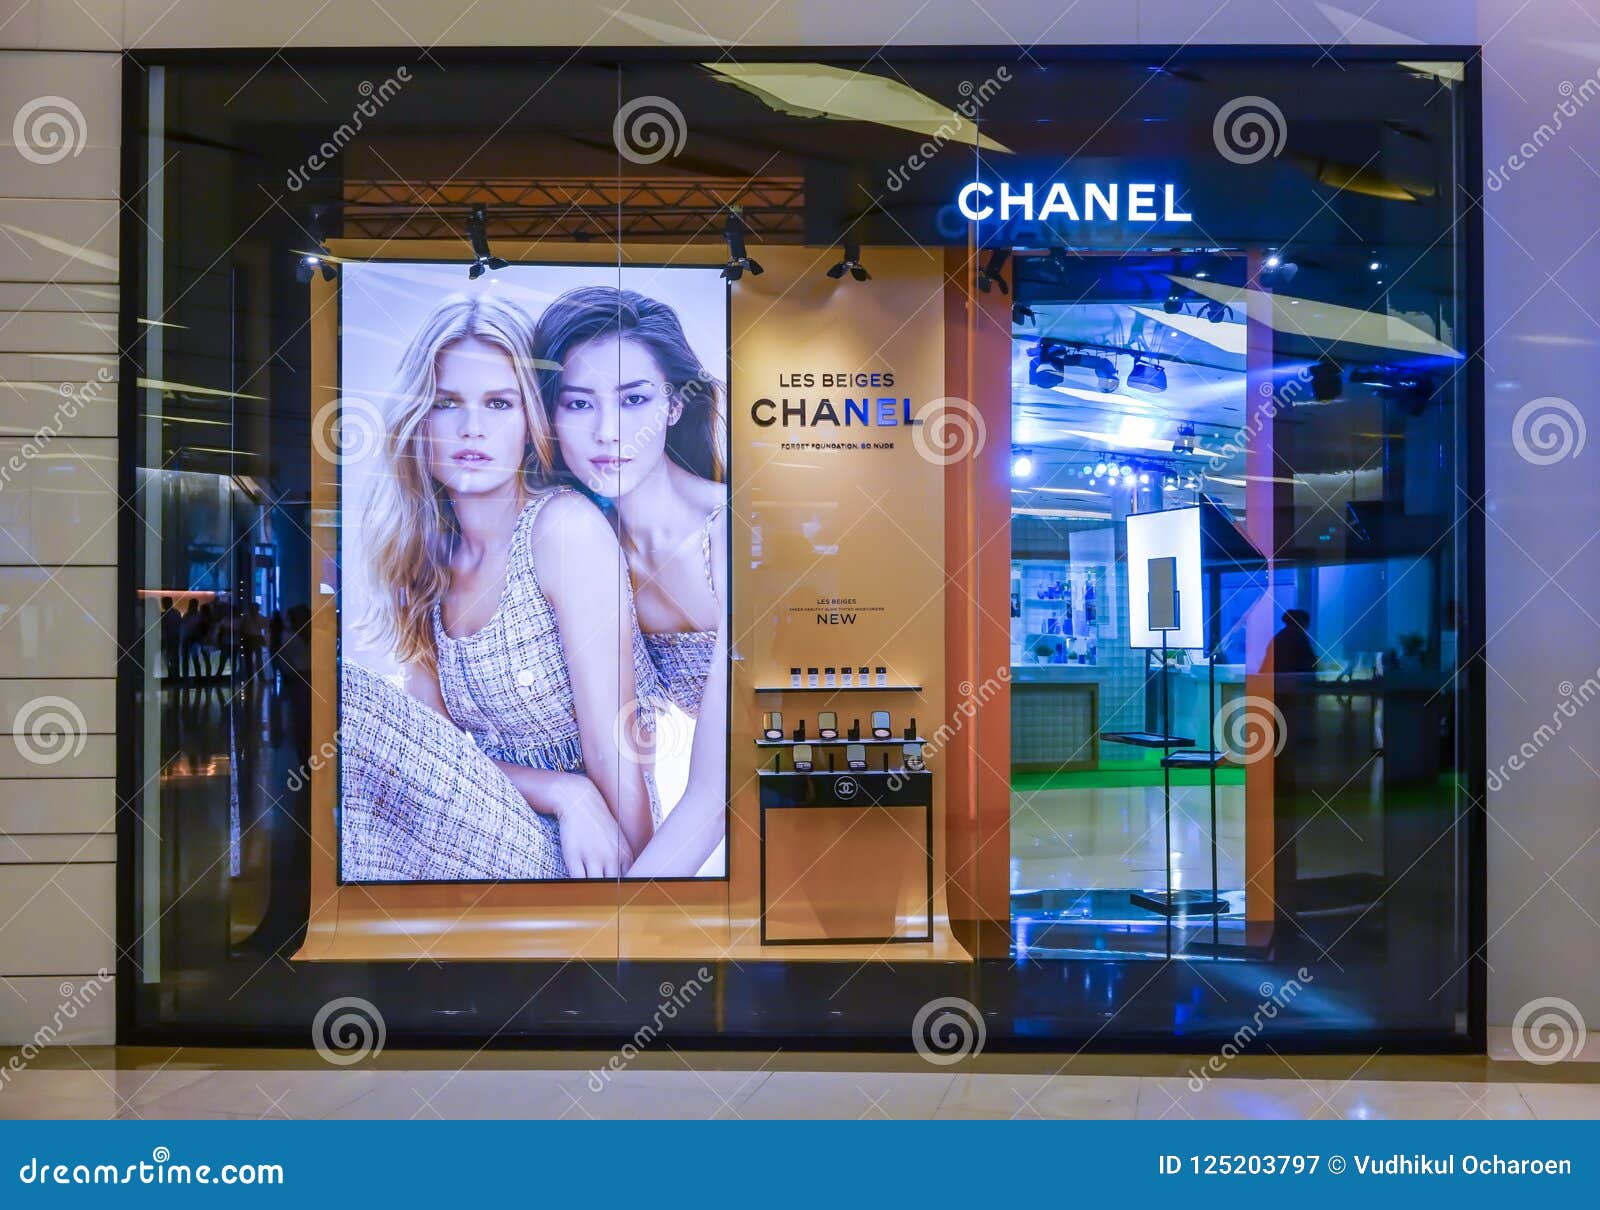 Chanel Cosmetic Display at Siam Paragon, Bangkok, Thailand, May ...